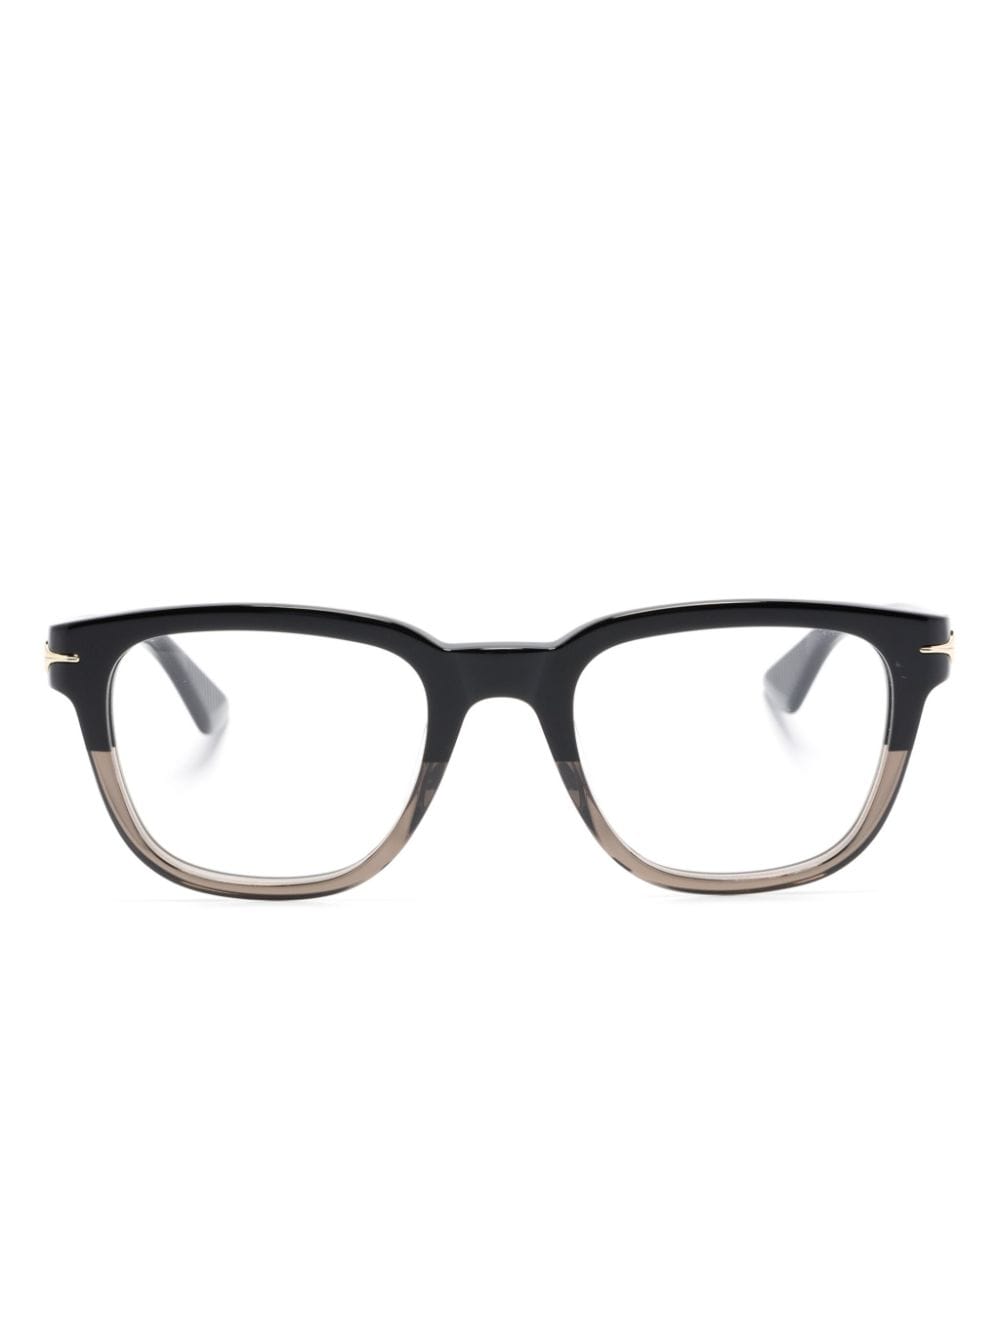 Montblanc Eckige Brille mit Farbverlauf-Optik - Schwarz von Montblanc